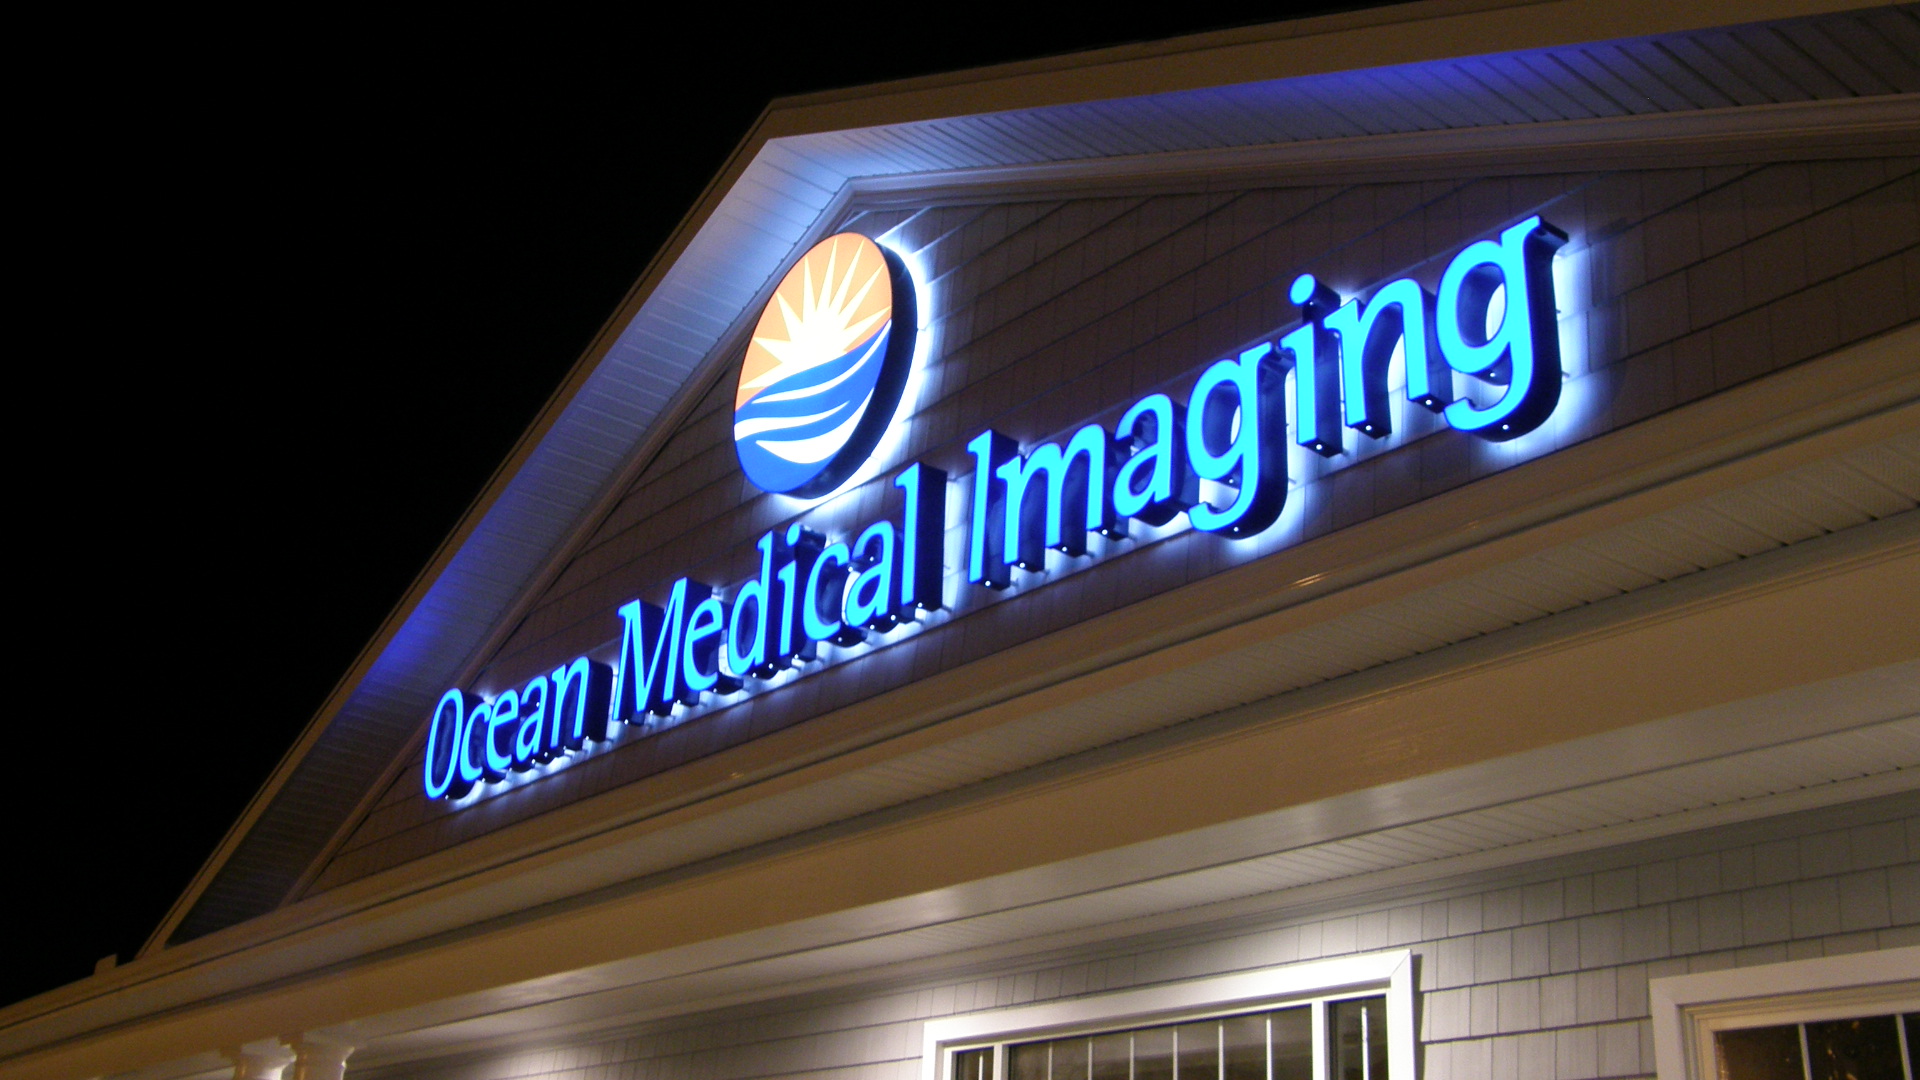 Ocean Medical Imaging Channel Letter Sign